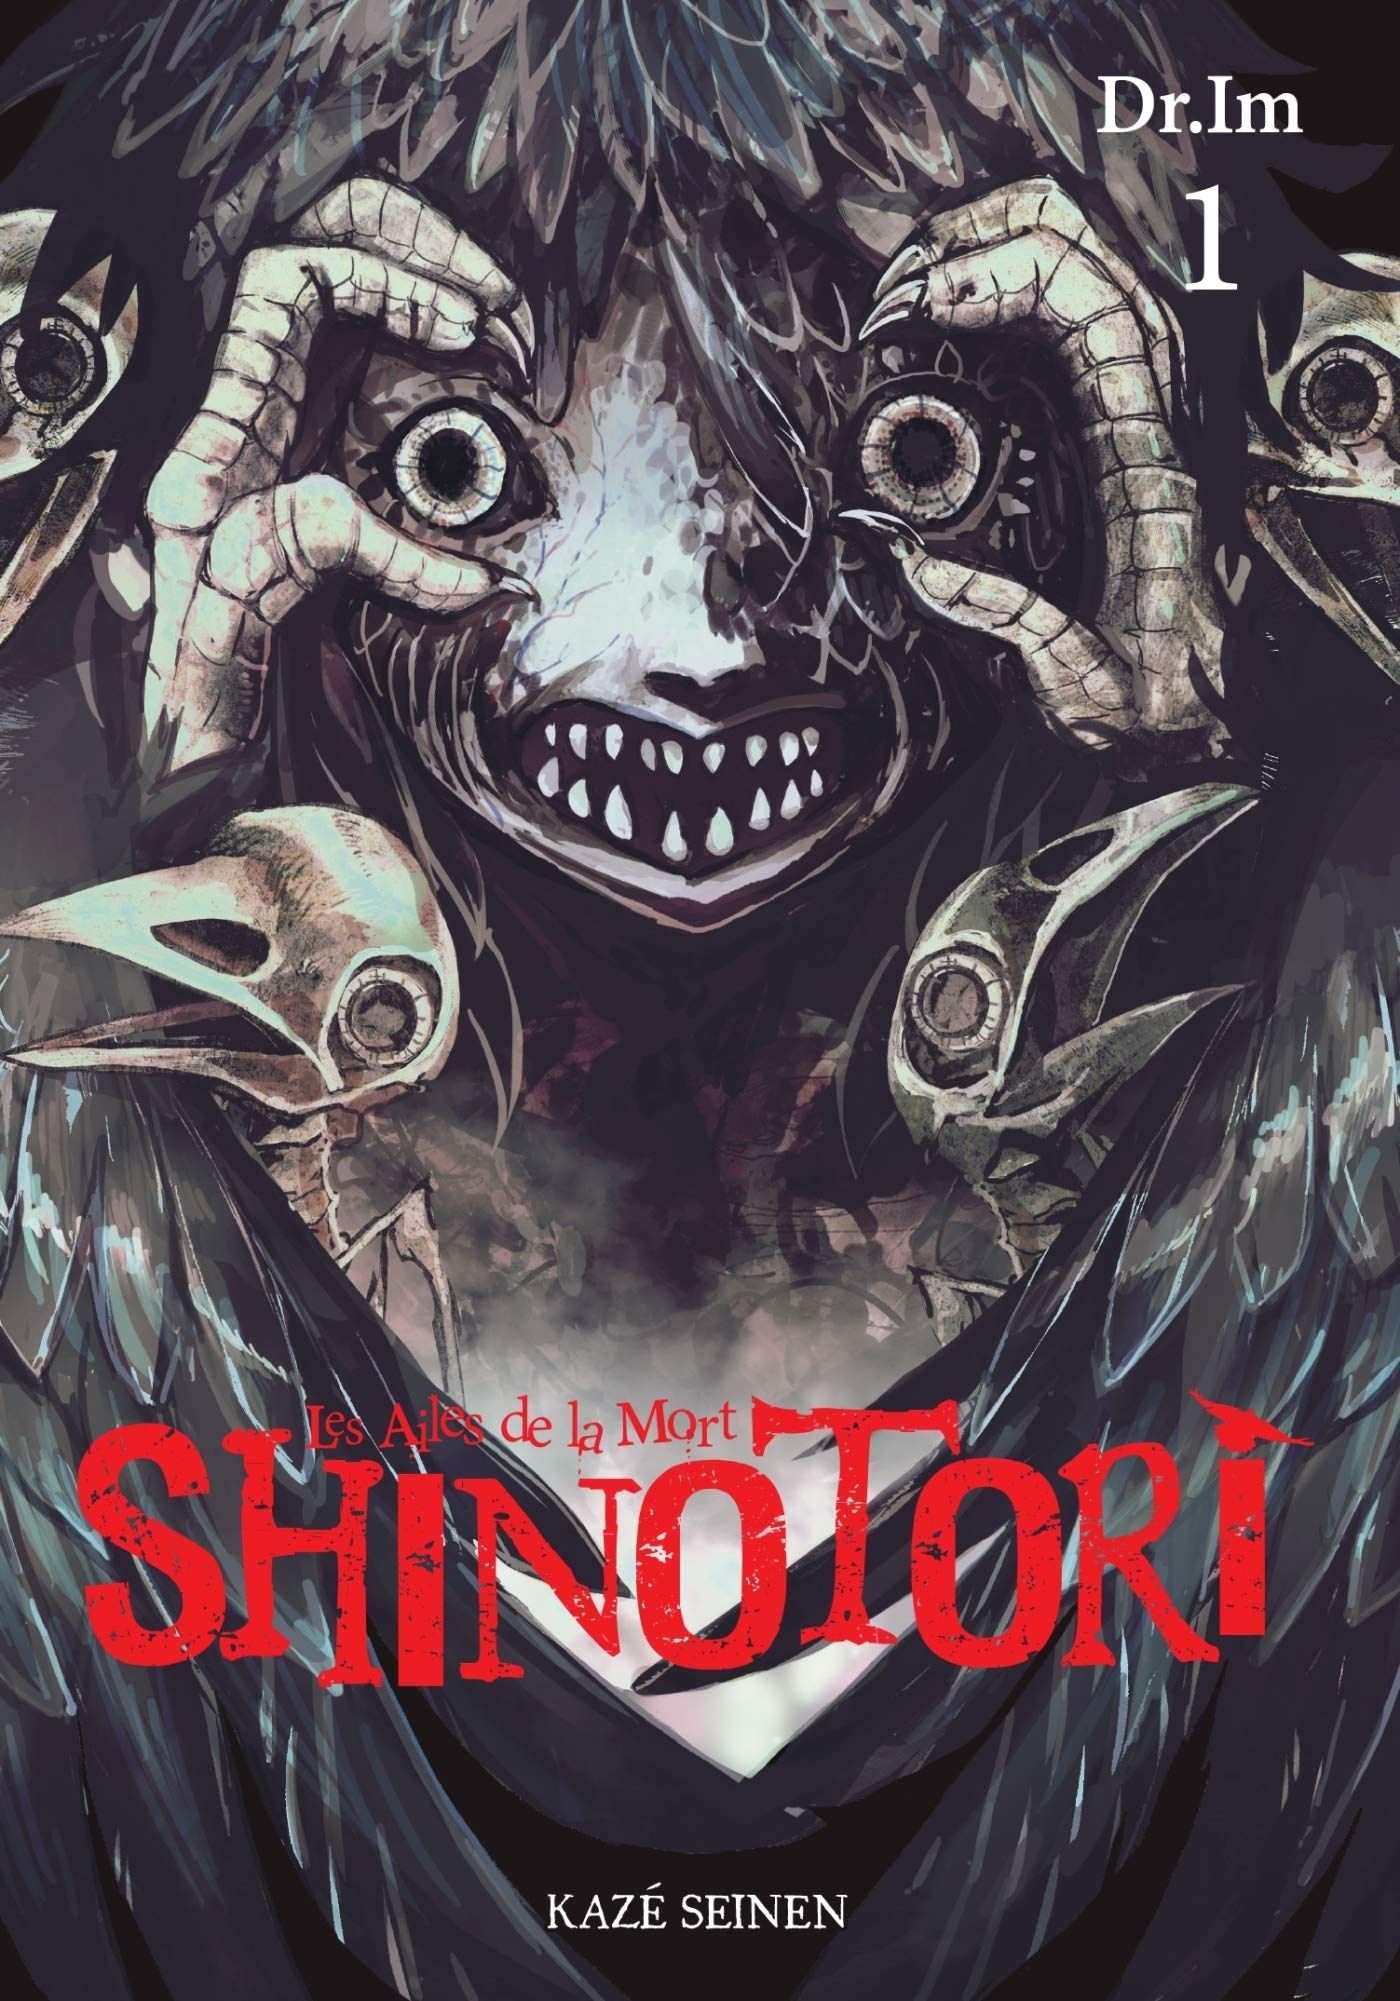 Shinotori